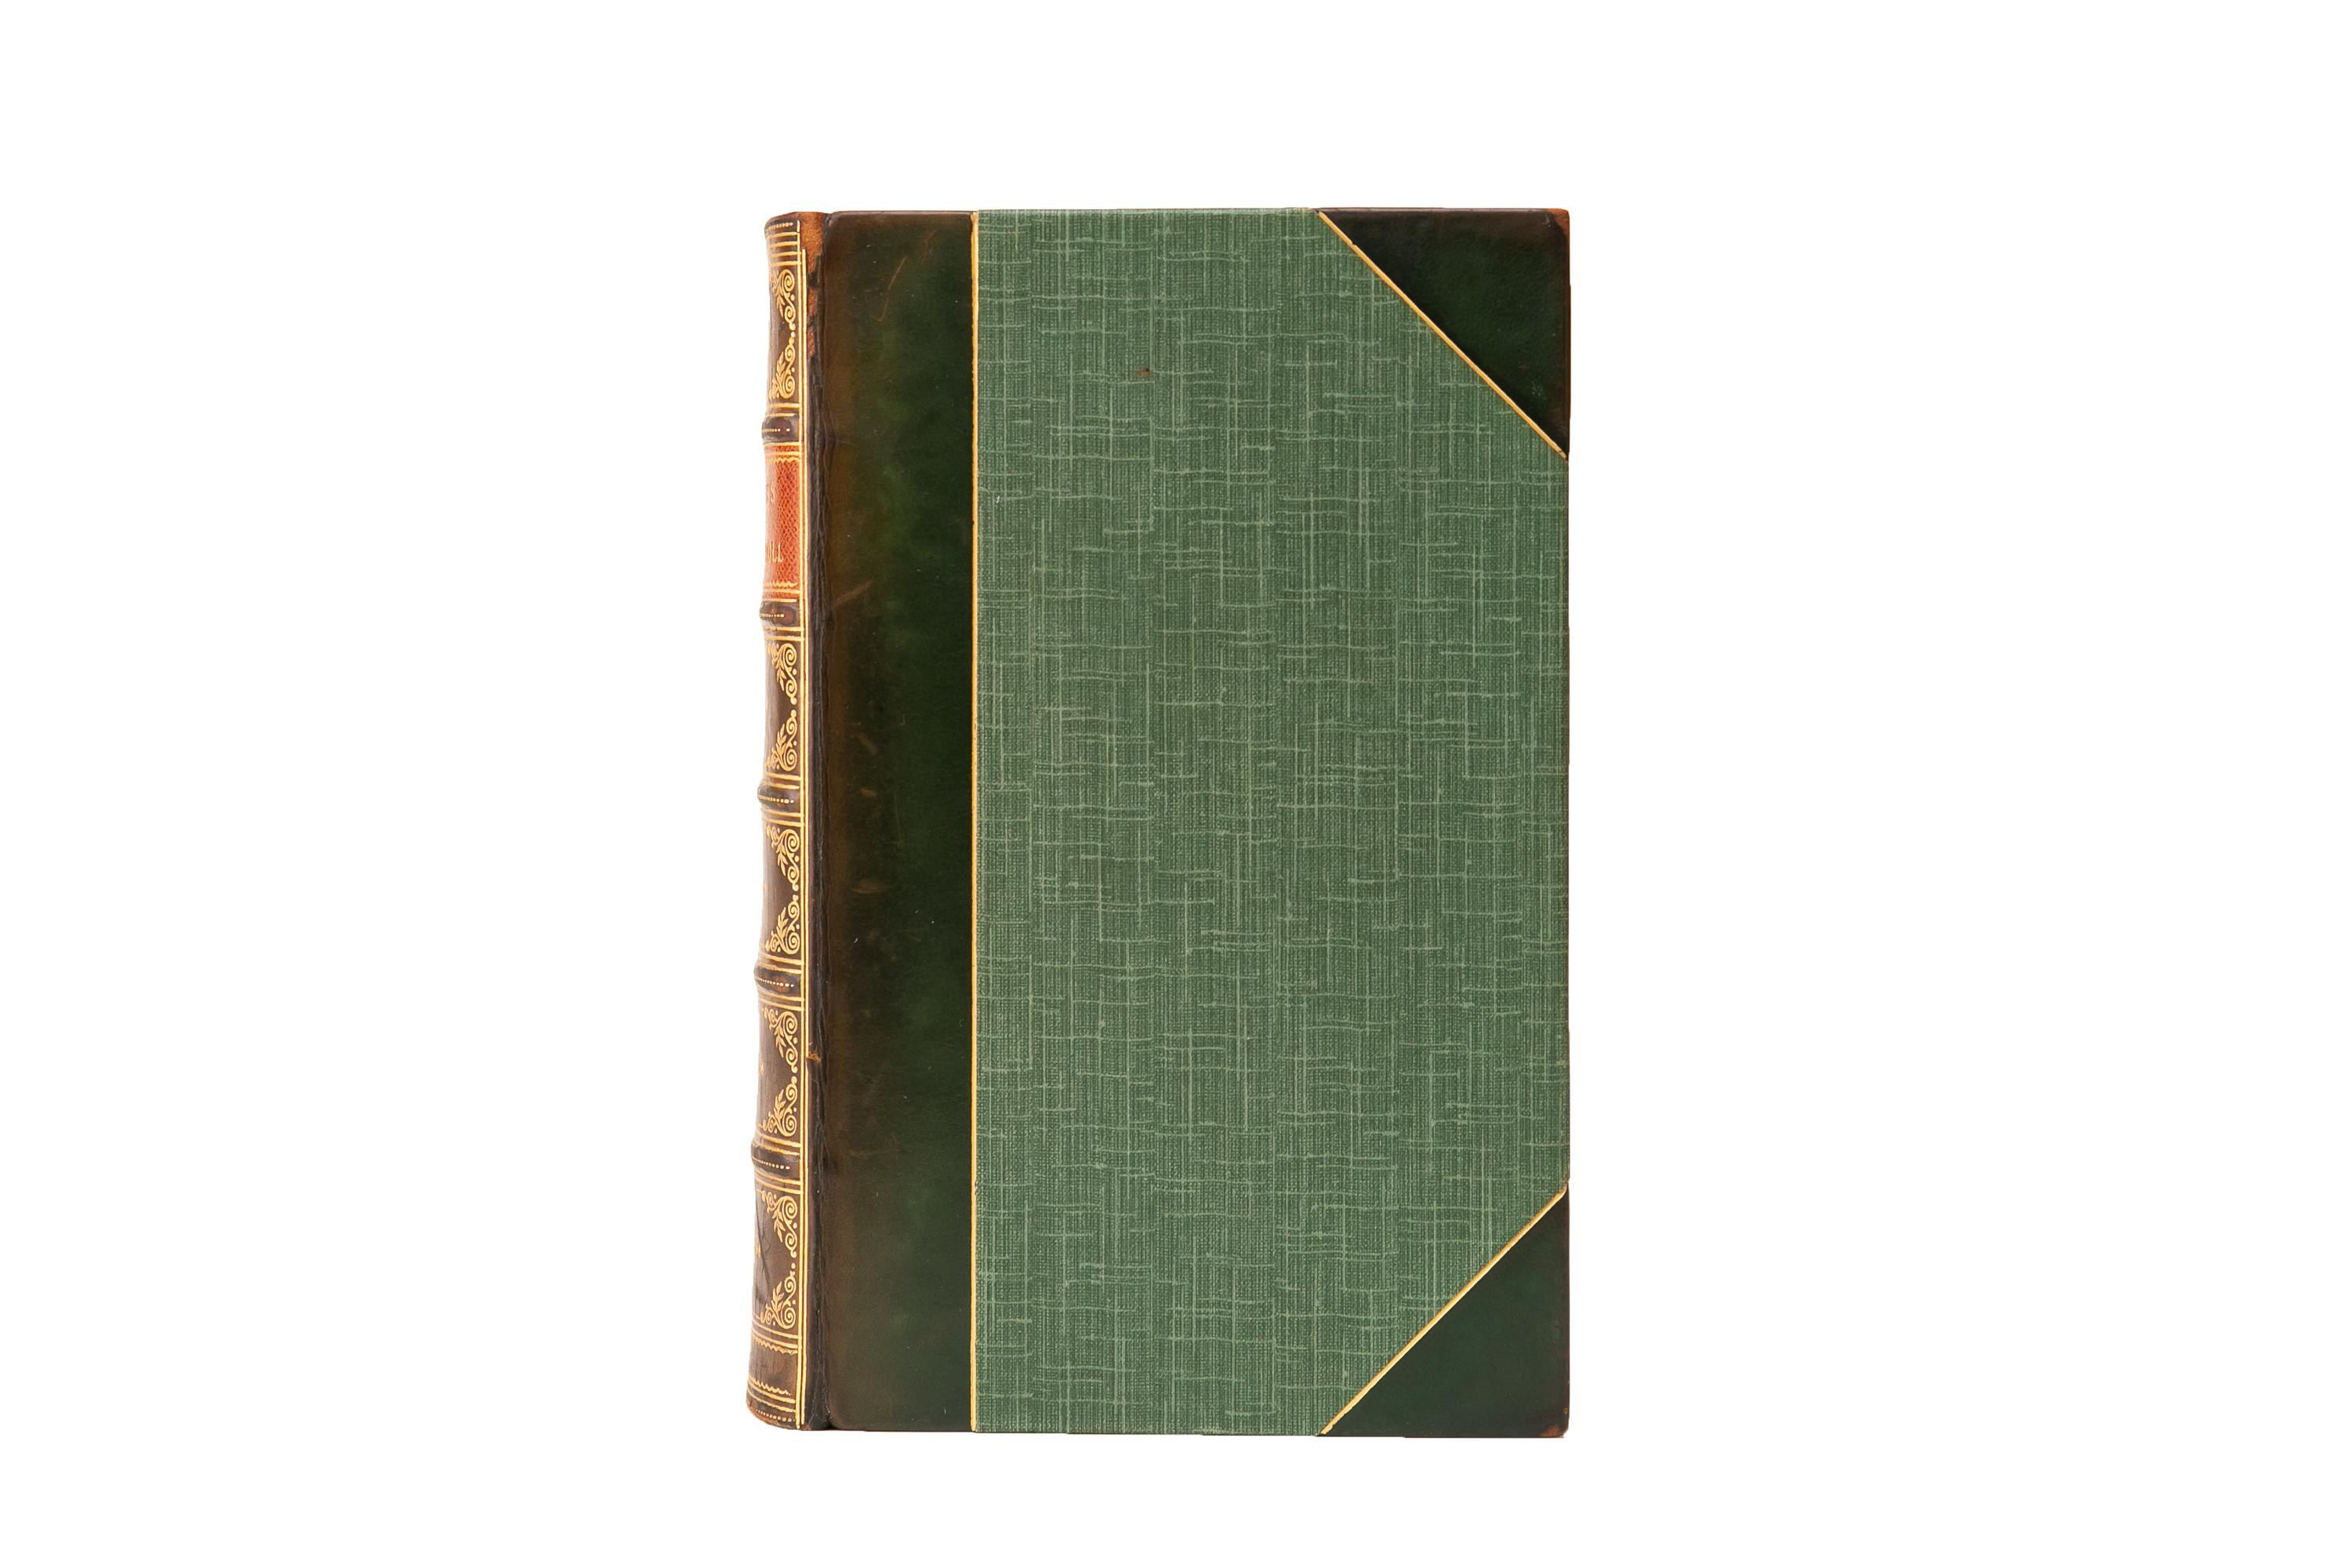 1 Band. Lewis Carroll, Die Werke. Erste Nonesuch-Ausgabe. Gebunden in 3/4 grünem Kalbsleder und Leinenplatten. Die Abdeckungen und erhöhten Bandrücken sind vergoldet mit einem braunen Marokko Label. Der obere Rand ist vergoldet und die Vorsätze sind